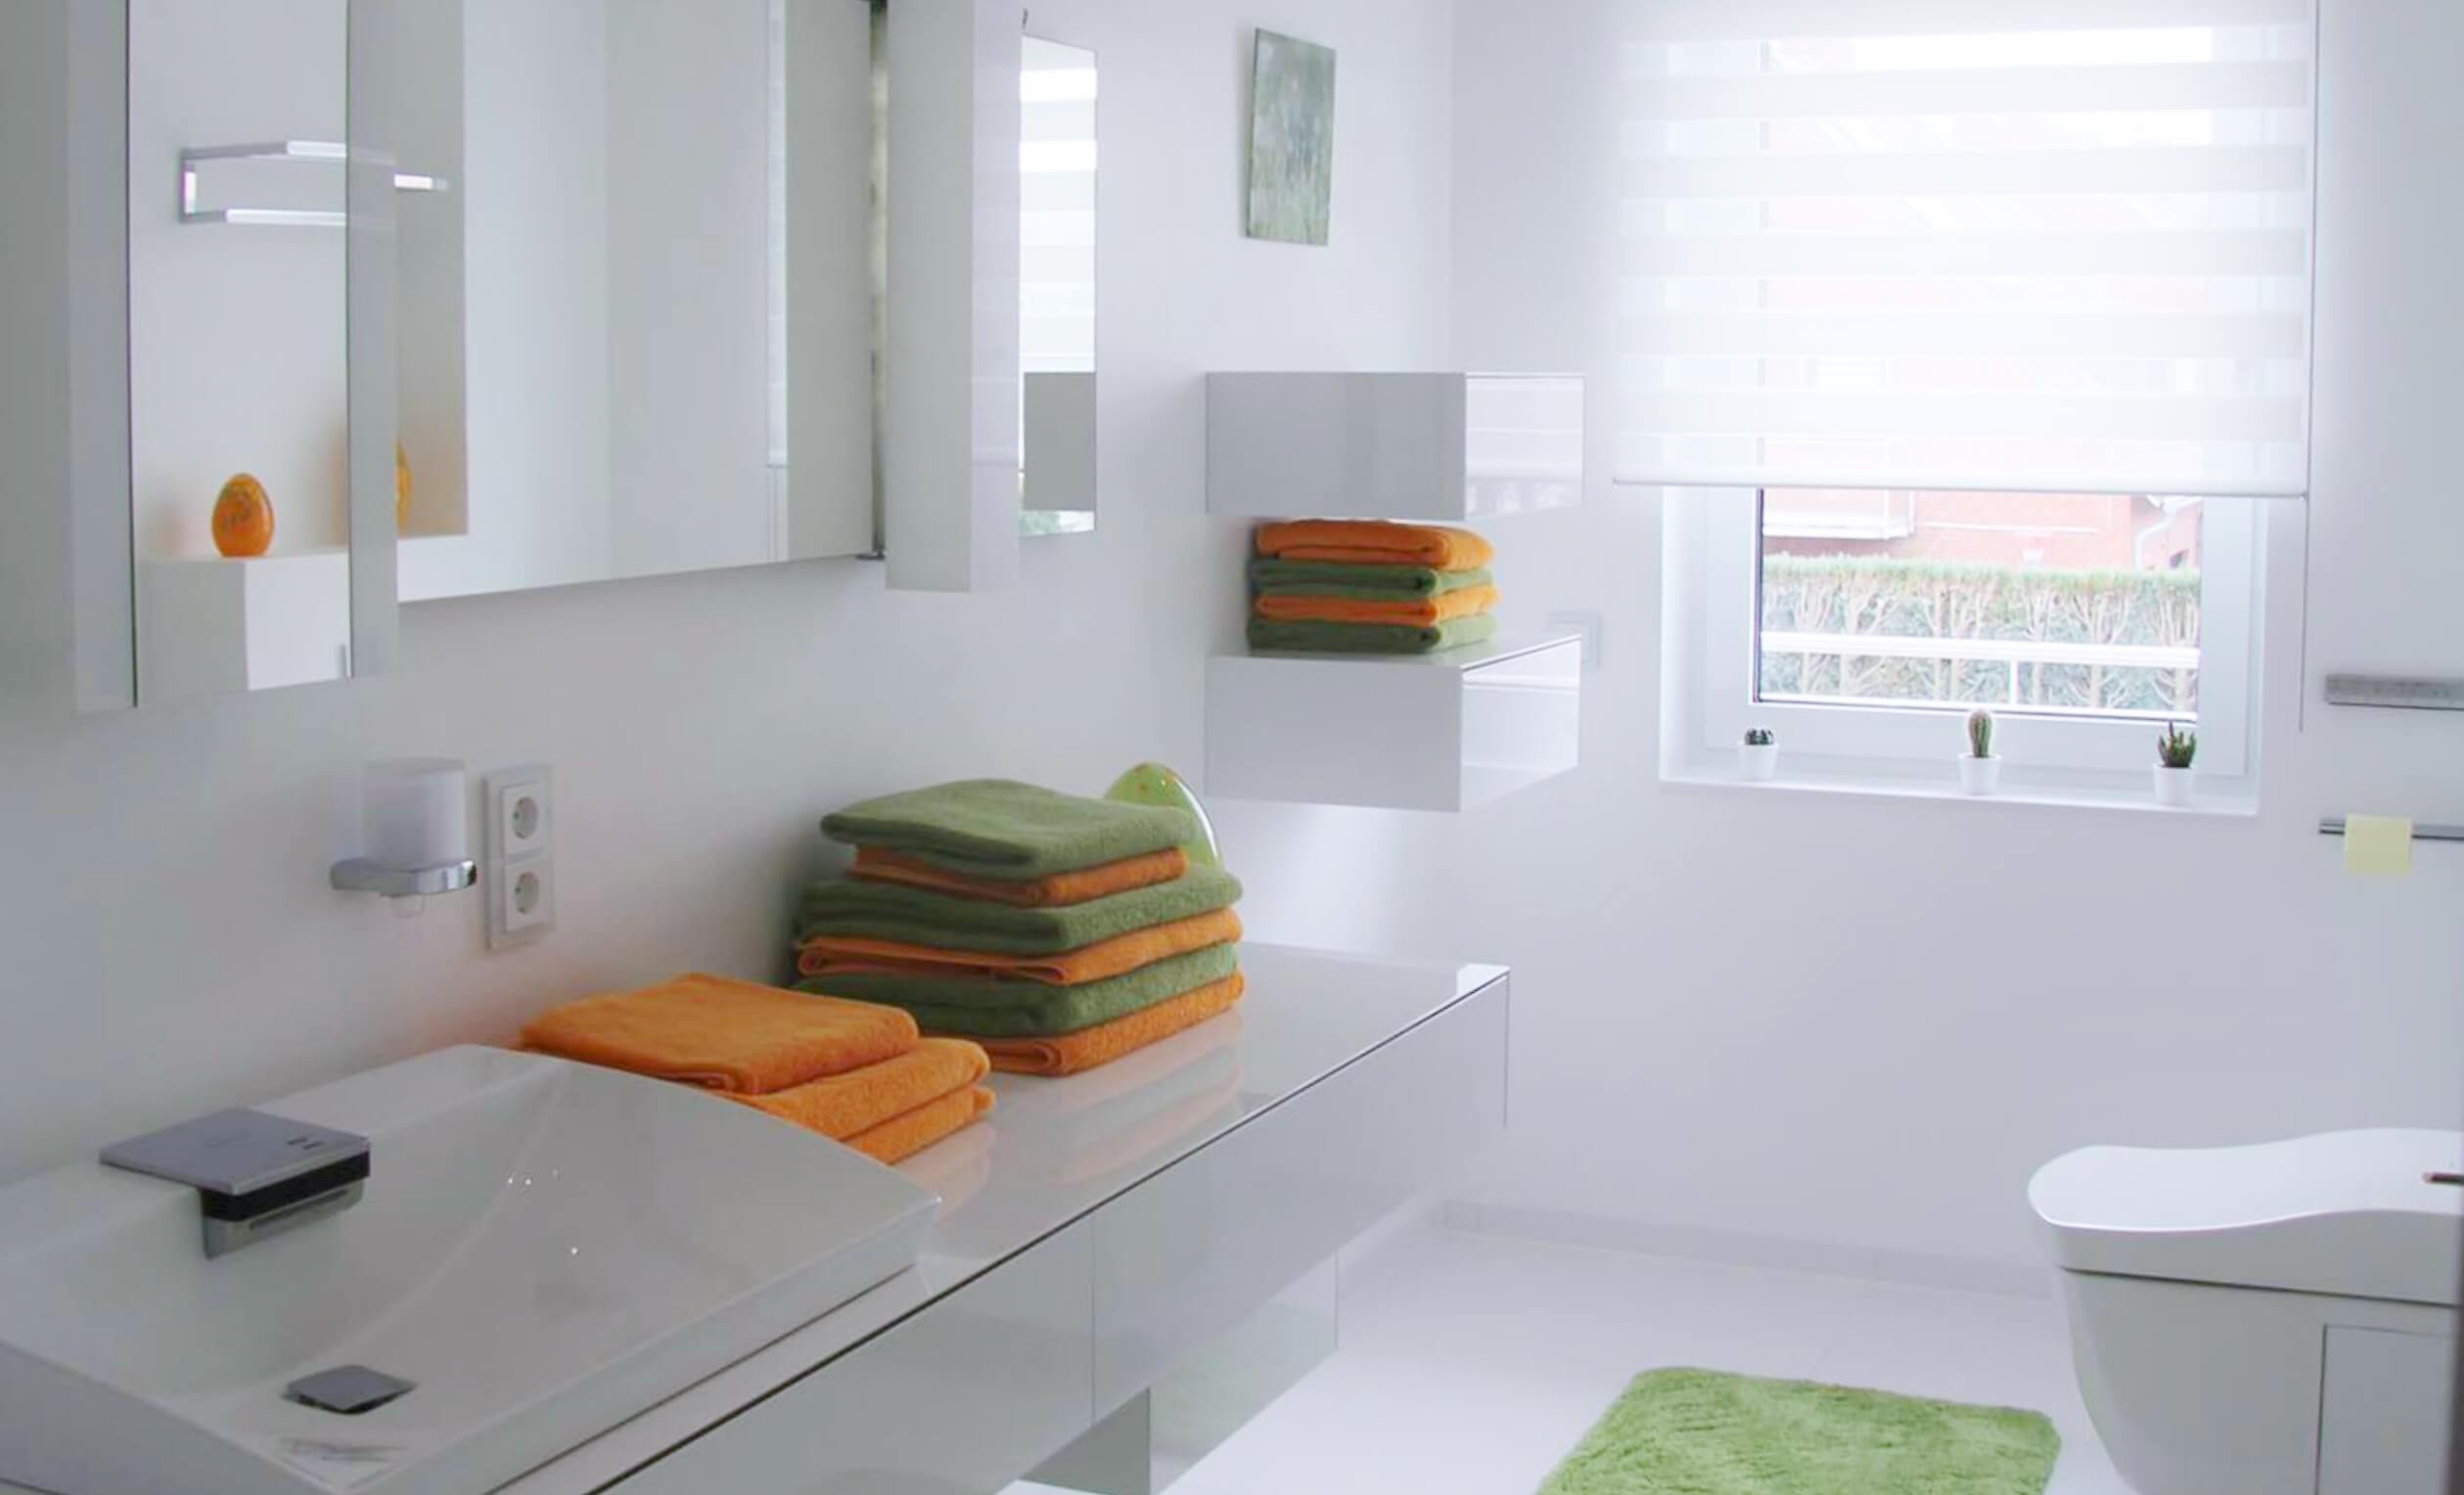 Gäste-WC in Weiß mit Washlet und modernem Waschtisch samt orange-grüner Handtuchstapel